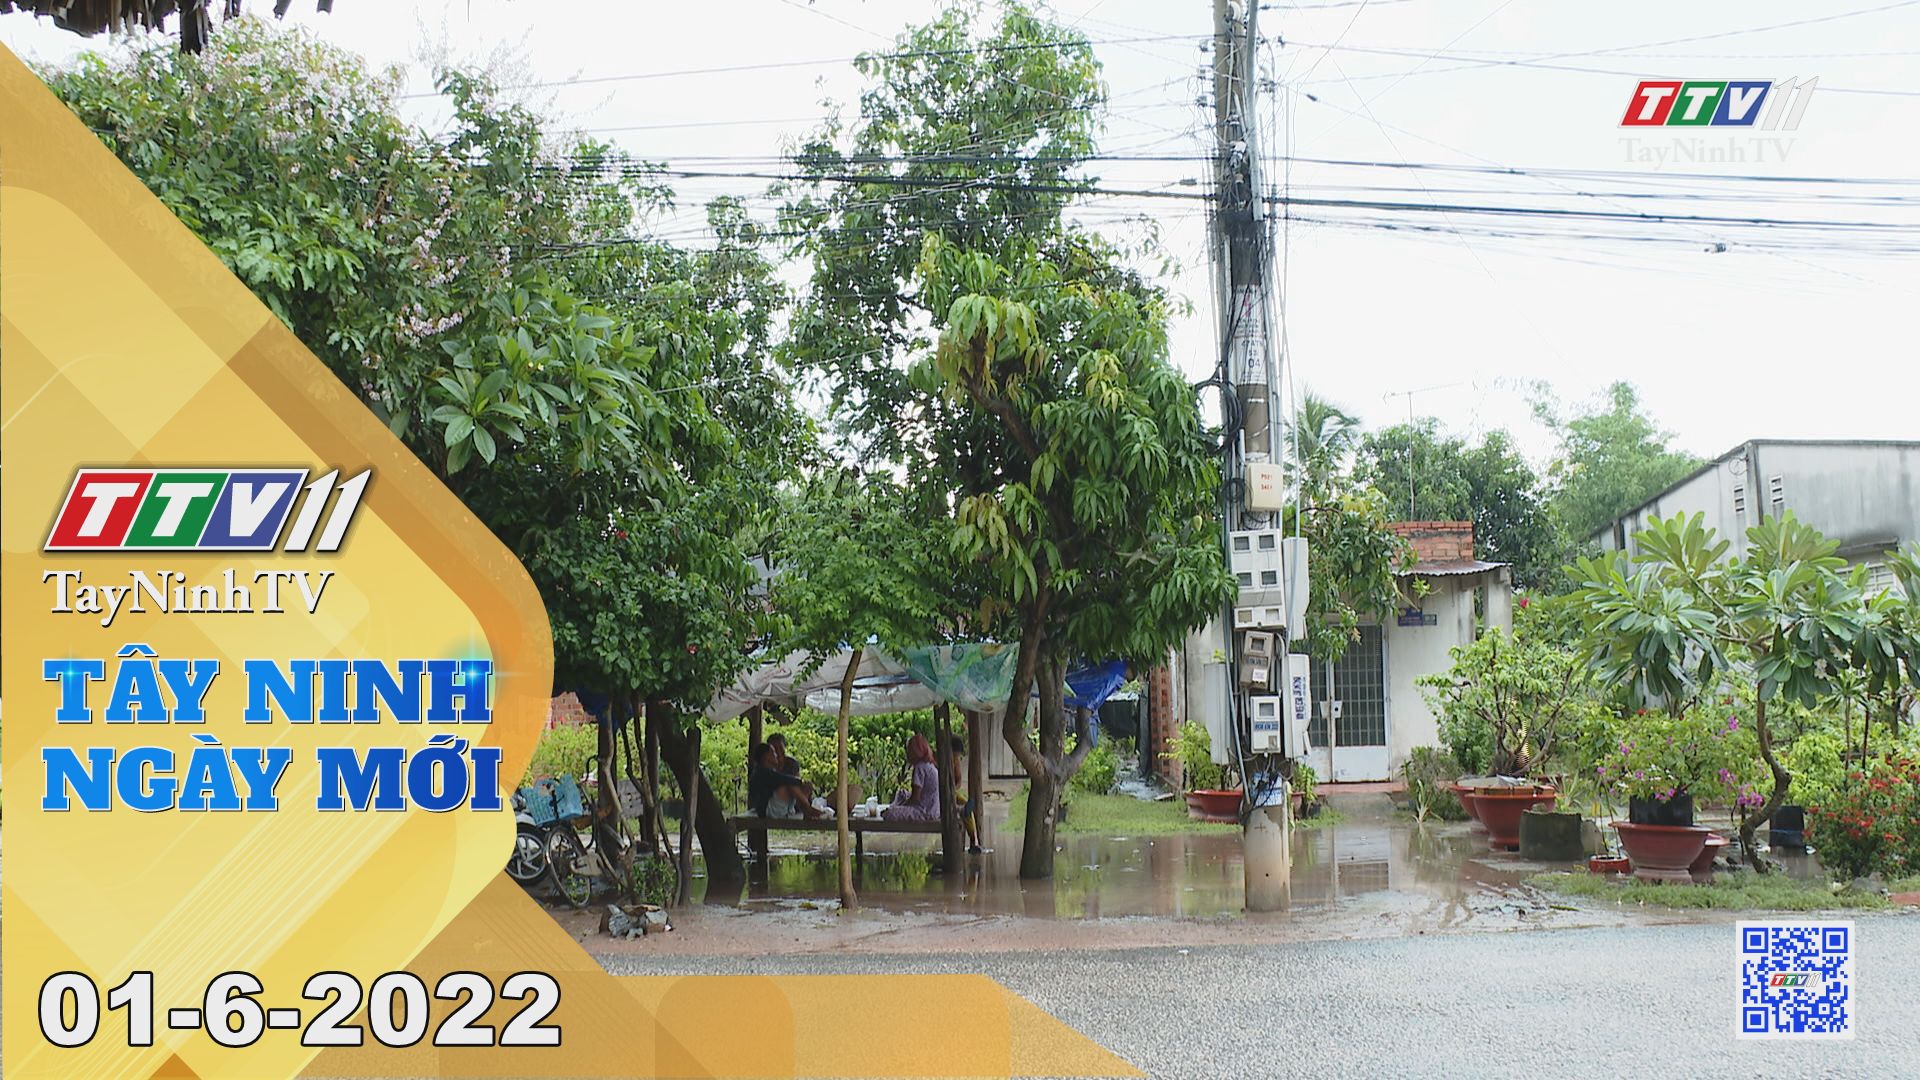 Tây Ninh ngày mới 01-6-2022 | Tin tức hôm nay | TayNinhTV